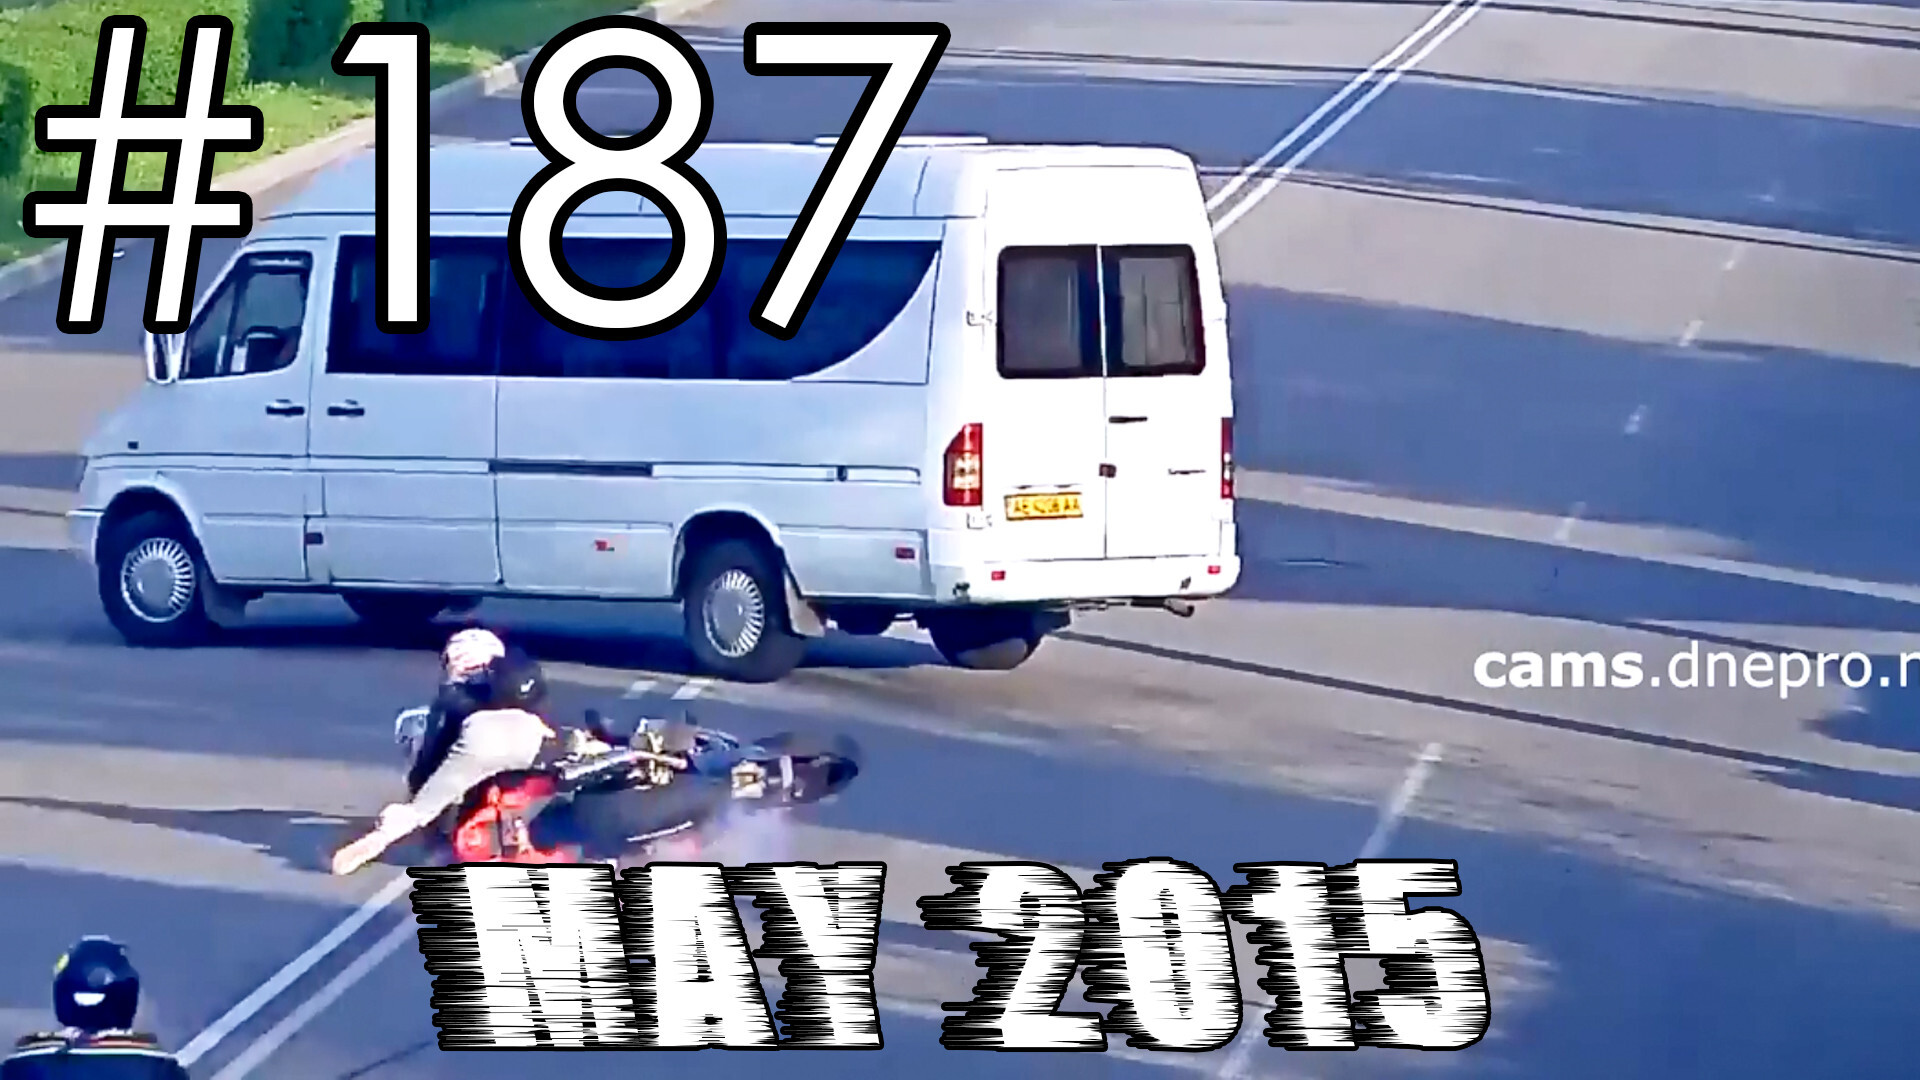 Подборка Аварий и ДТП #187 - Май 2015